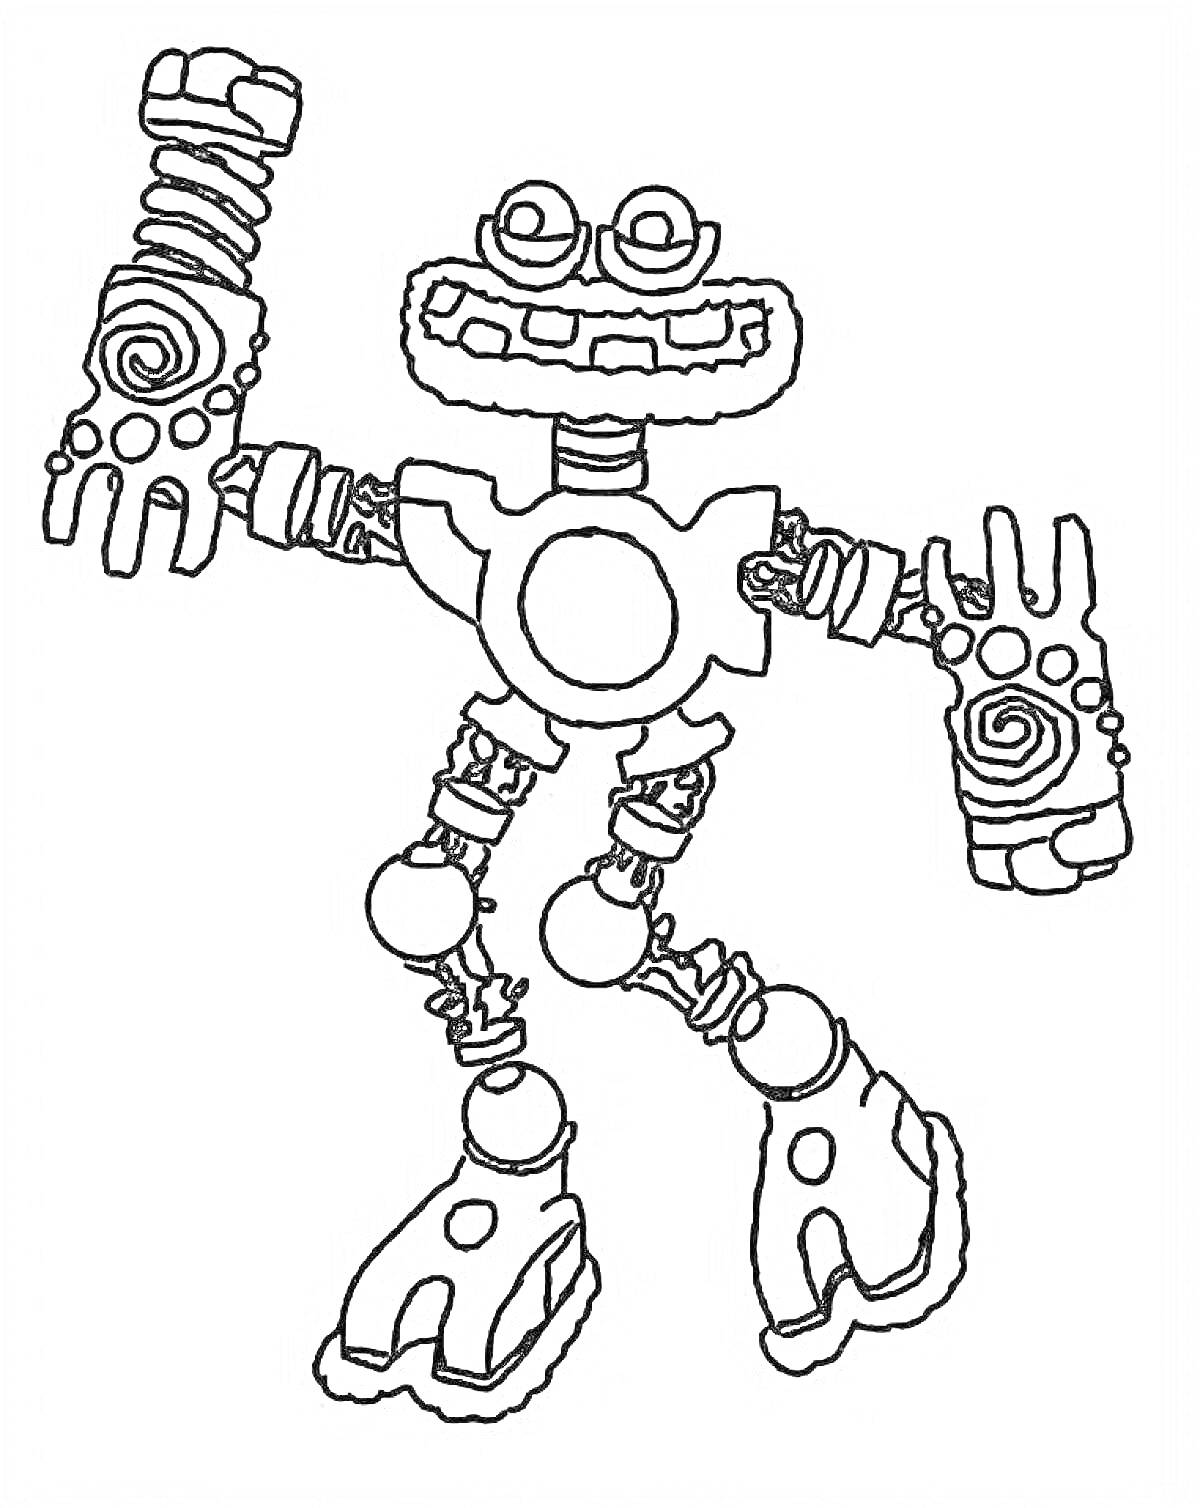 Раскраска Робот-монстр с большими ногами и руками с завитками